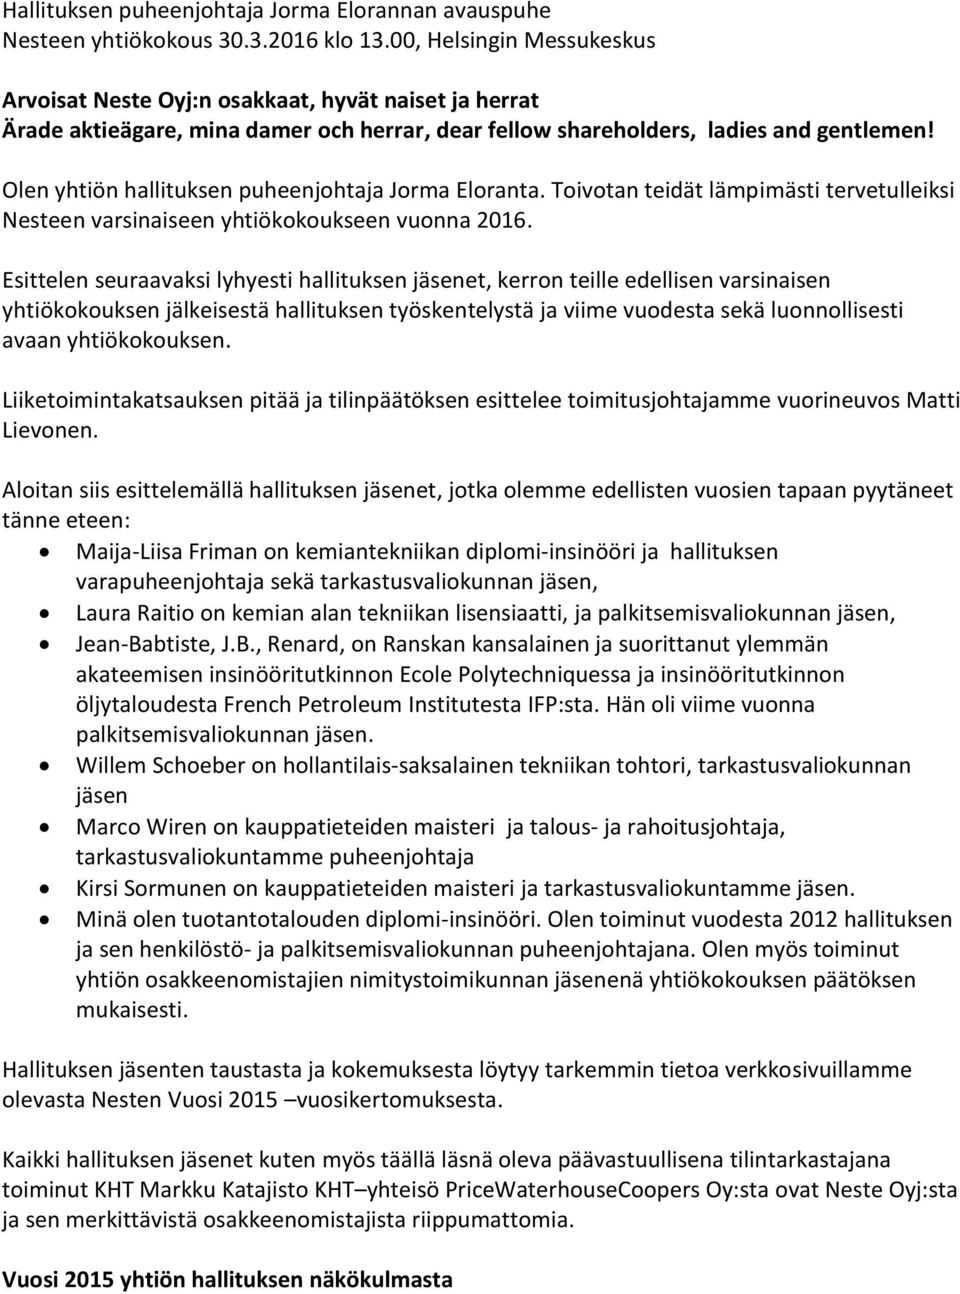 Olen yhtiön hallituksen puheenjohtaja Jorma Eloranta. Toivotan teidät lämpimästi tervetulleiksi Nesteen varsinaiseen yhtiökokoukseen vuonna 2016.